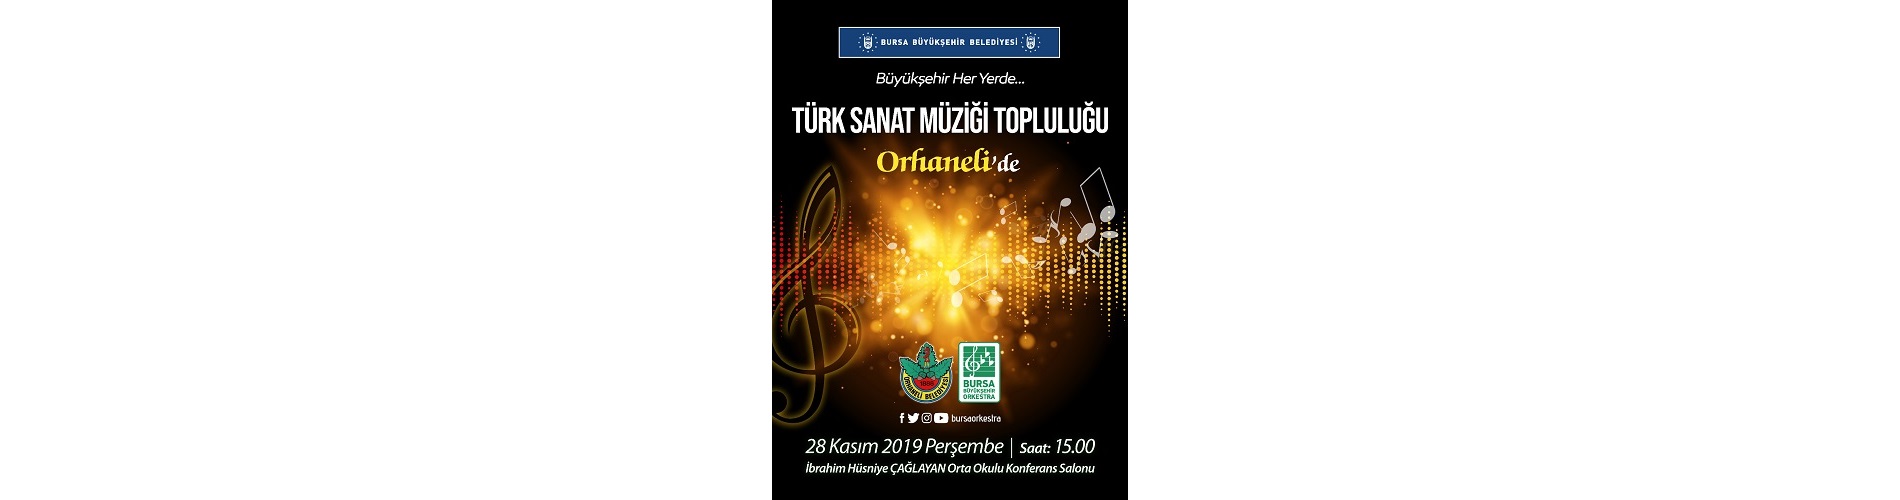  Bursa Büyükşehir Belediyesi Türk Sanat Müziği Topluluğu Konseri 